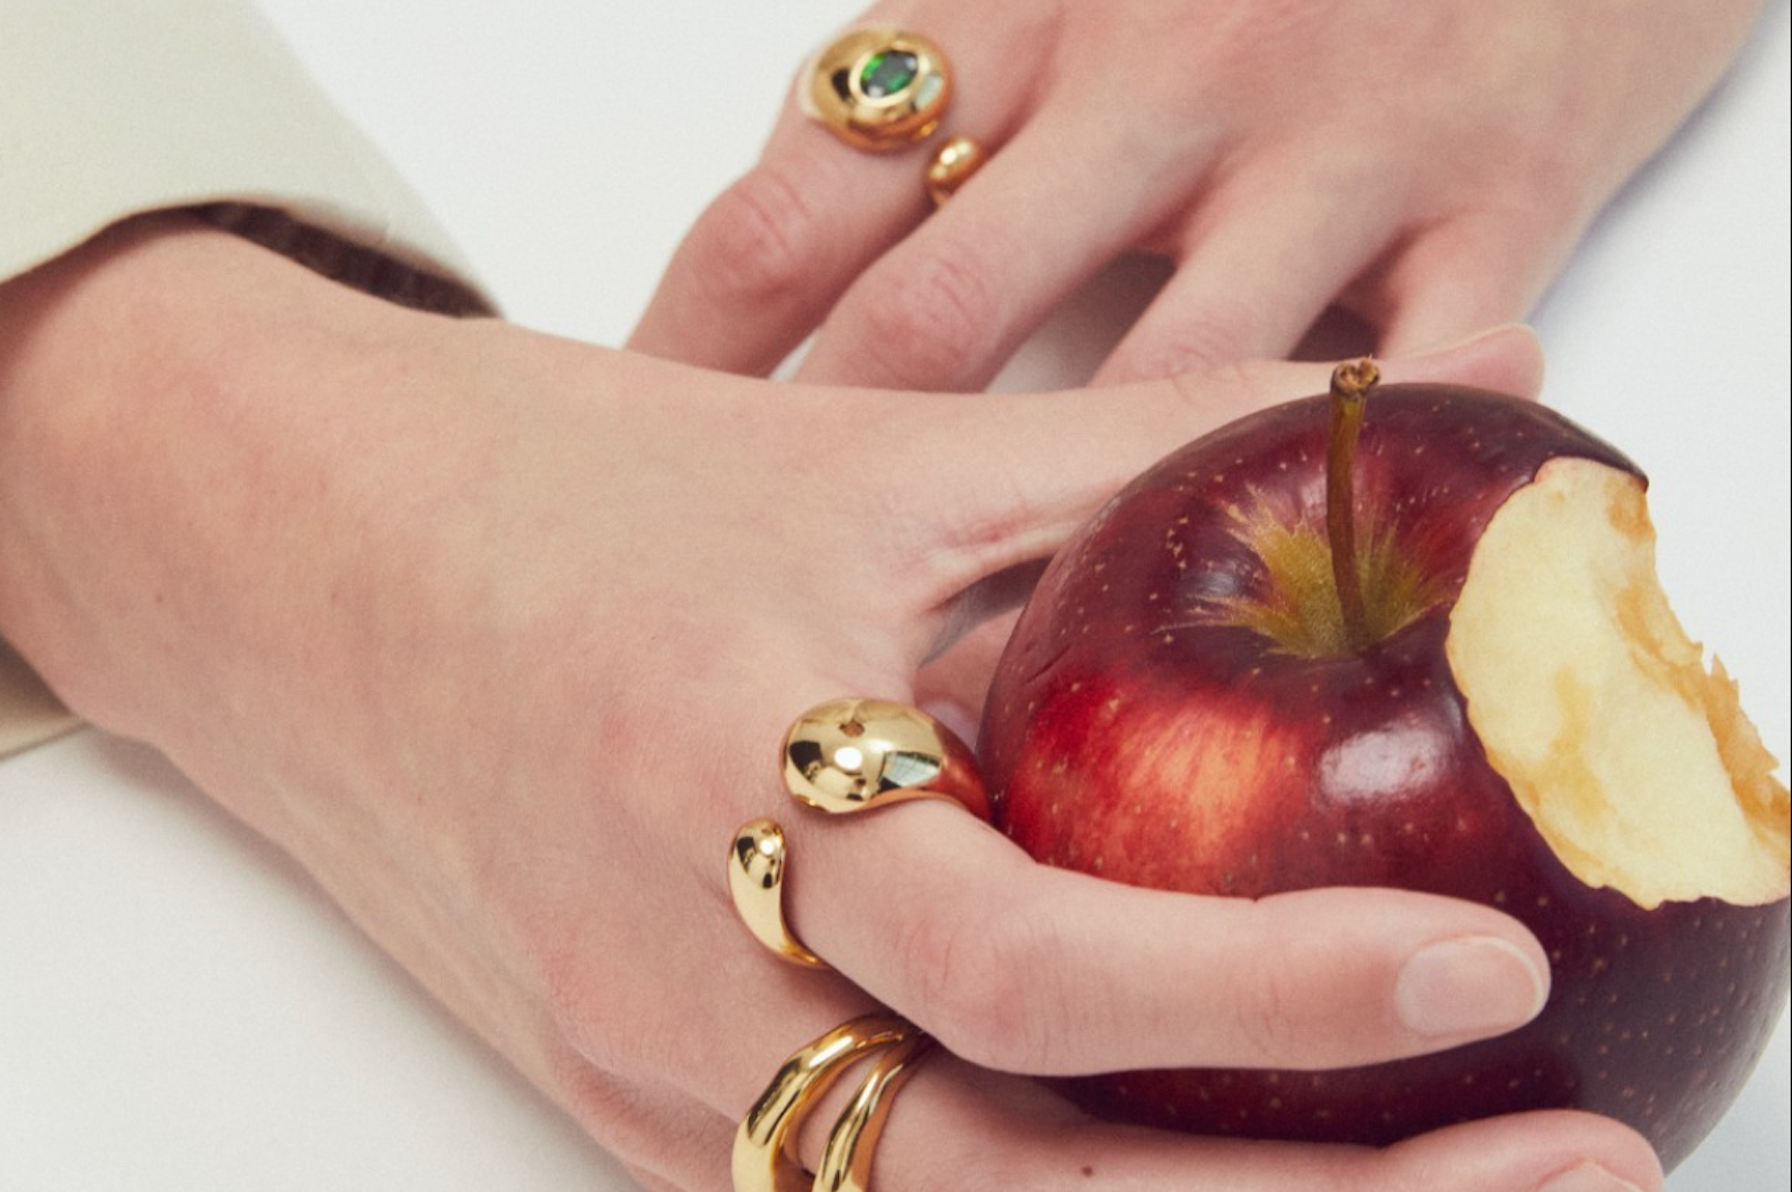 ezra ring reliquia jewellery with apple